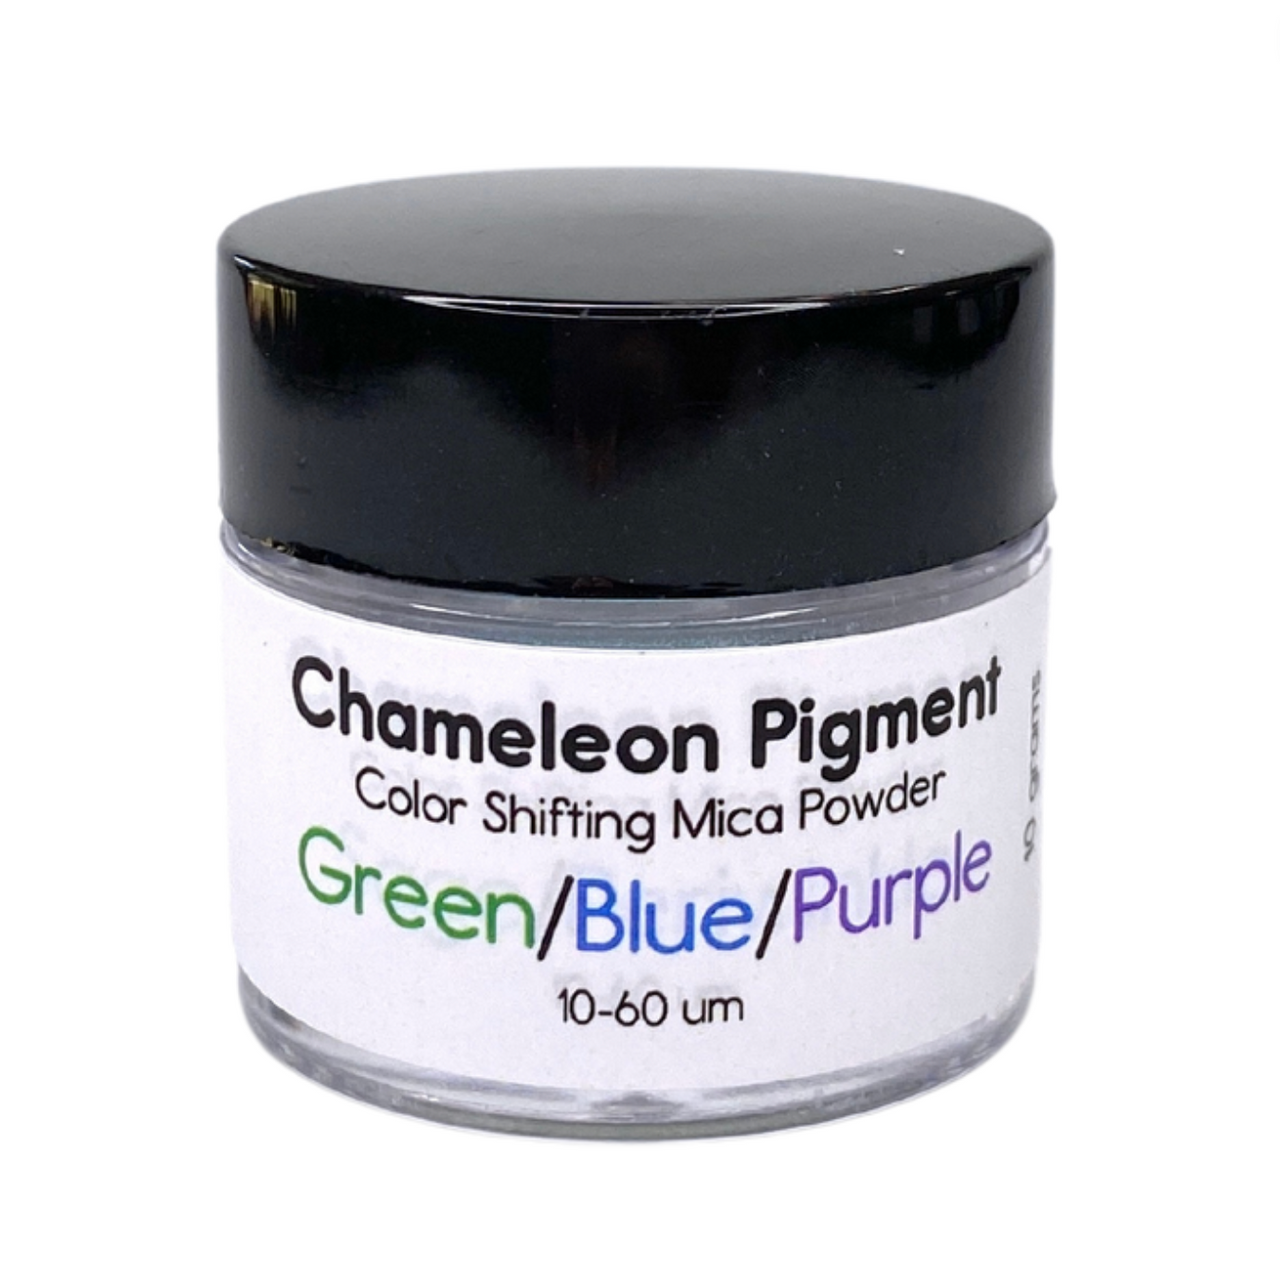 MANNYA 5 Color Chameleon Powder Set Color Shift Mica Powder for